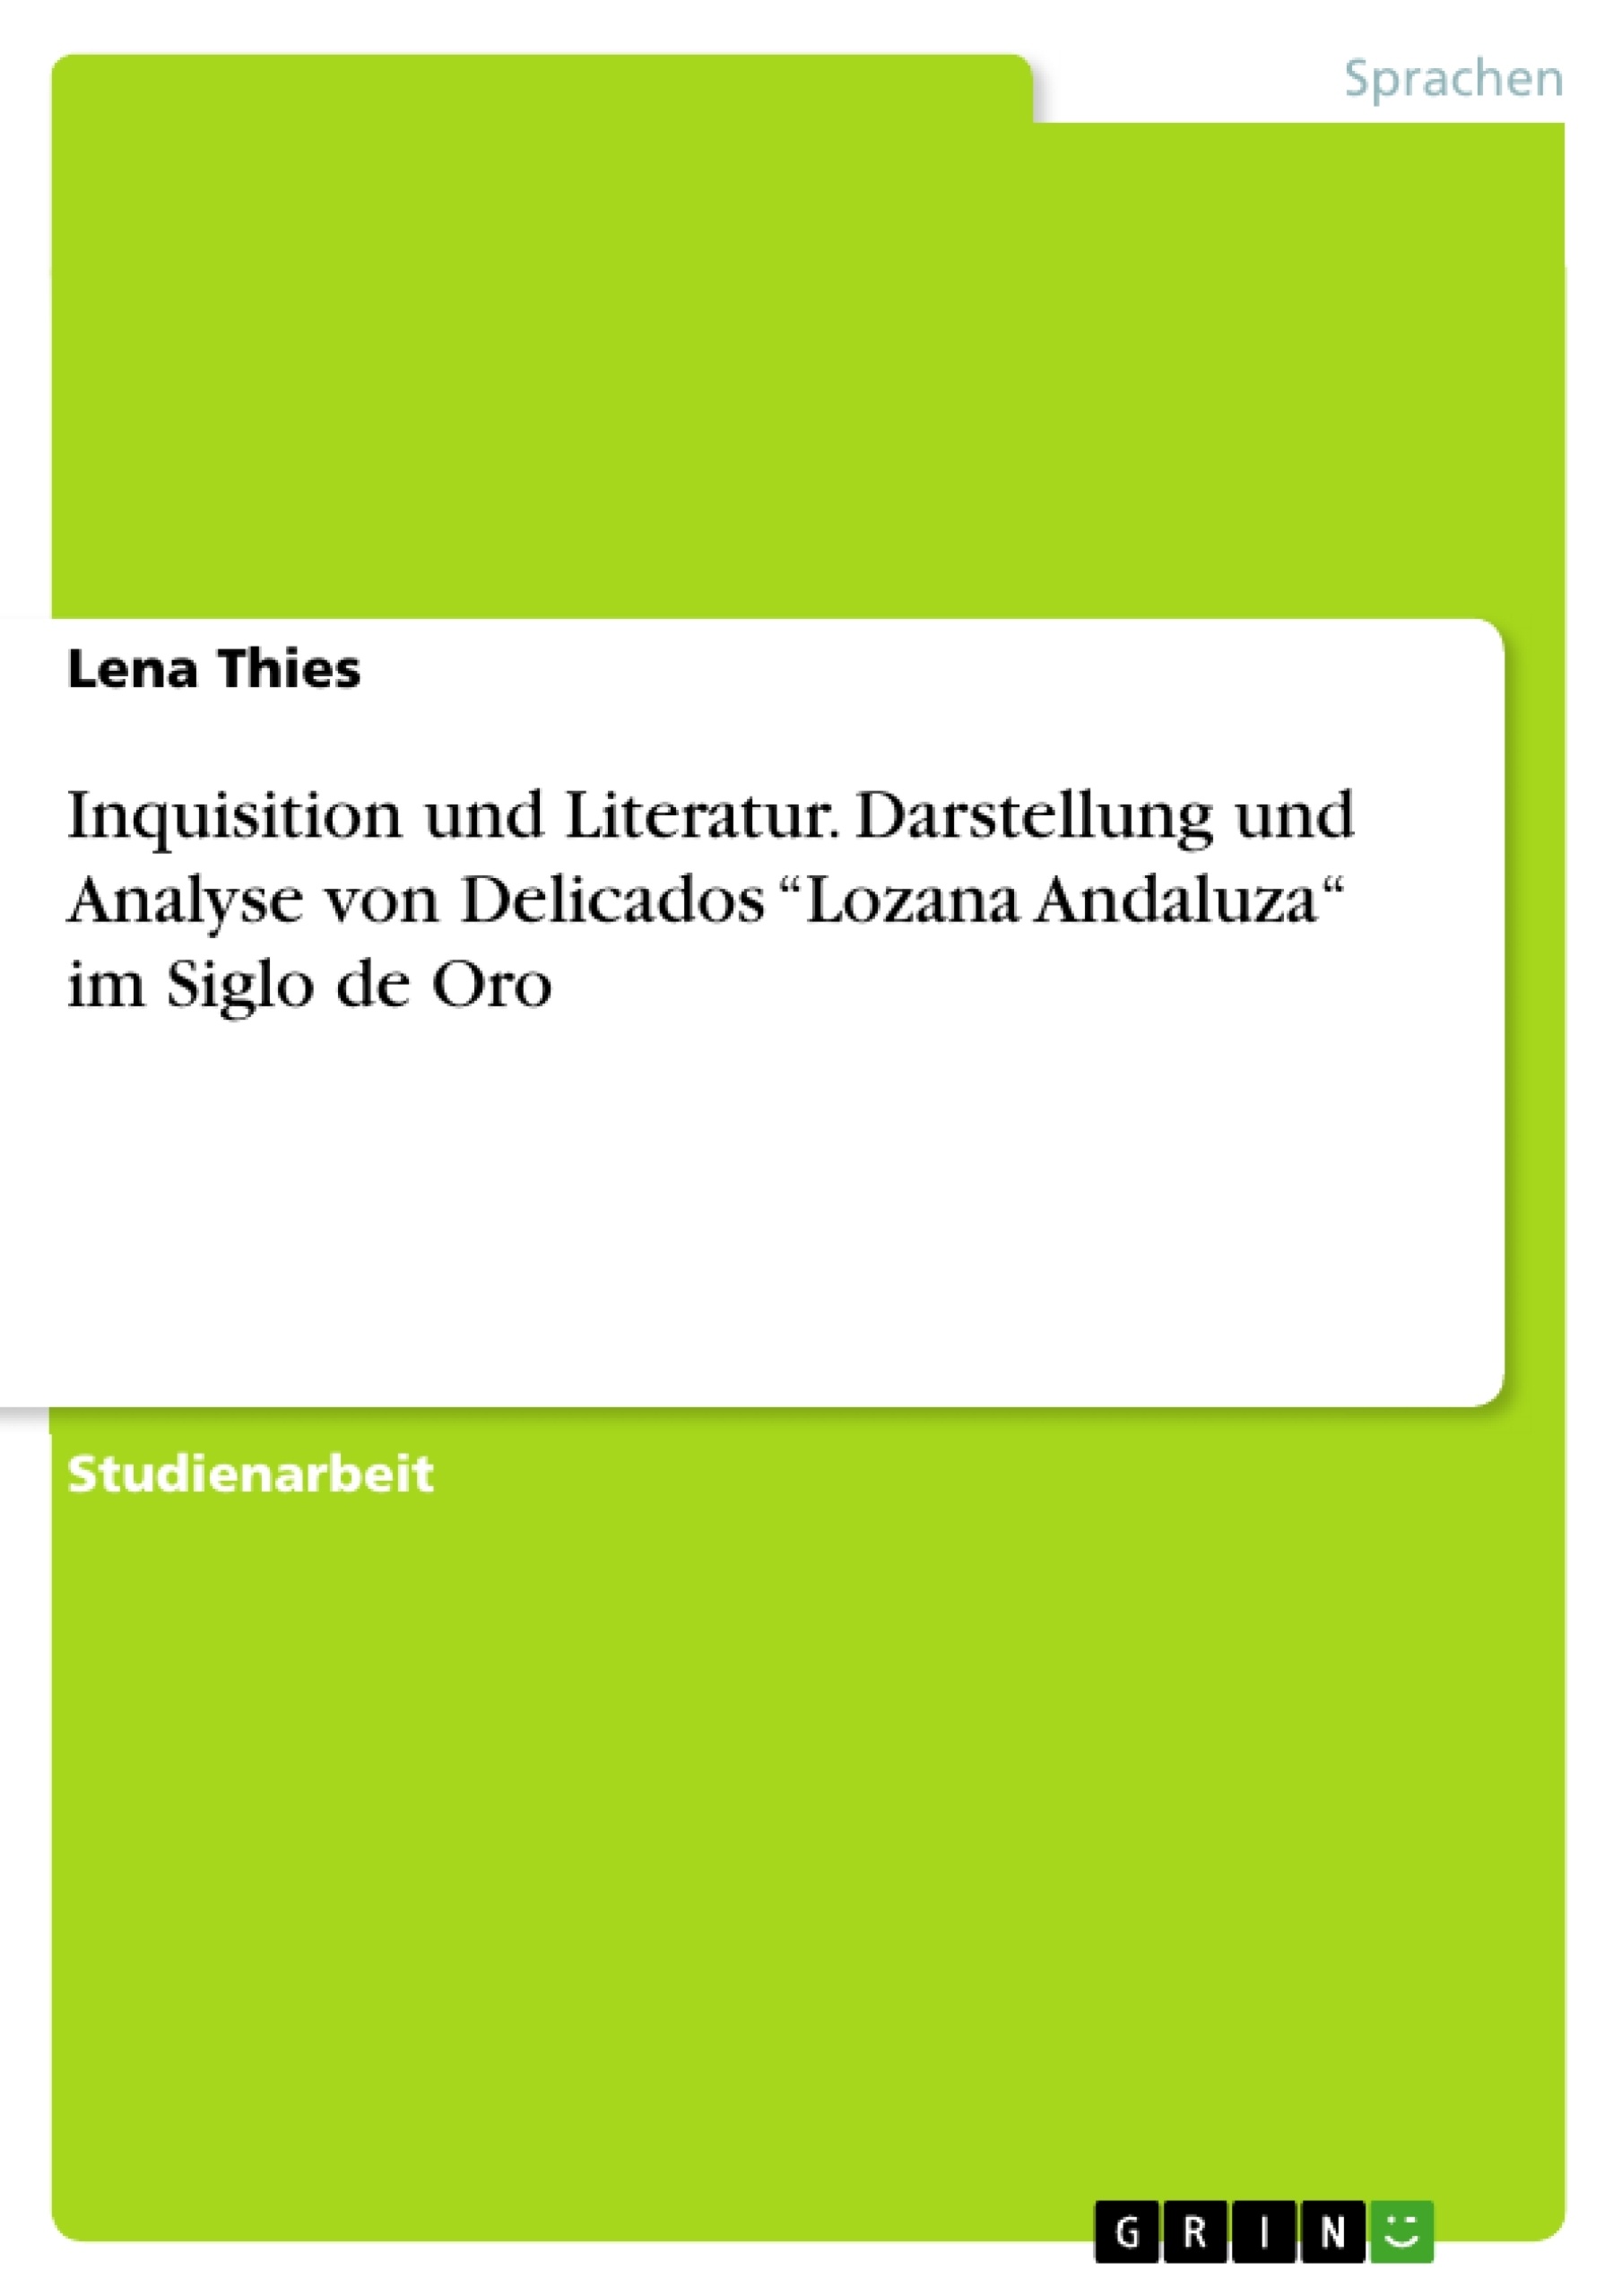 Titel: Inquisition und Literatur. Darstellung und Analyse von Delicados “Lozana Andaluza“ im Siglo de Oro